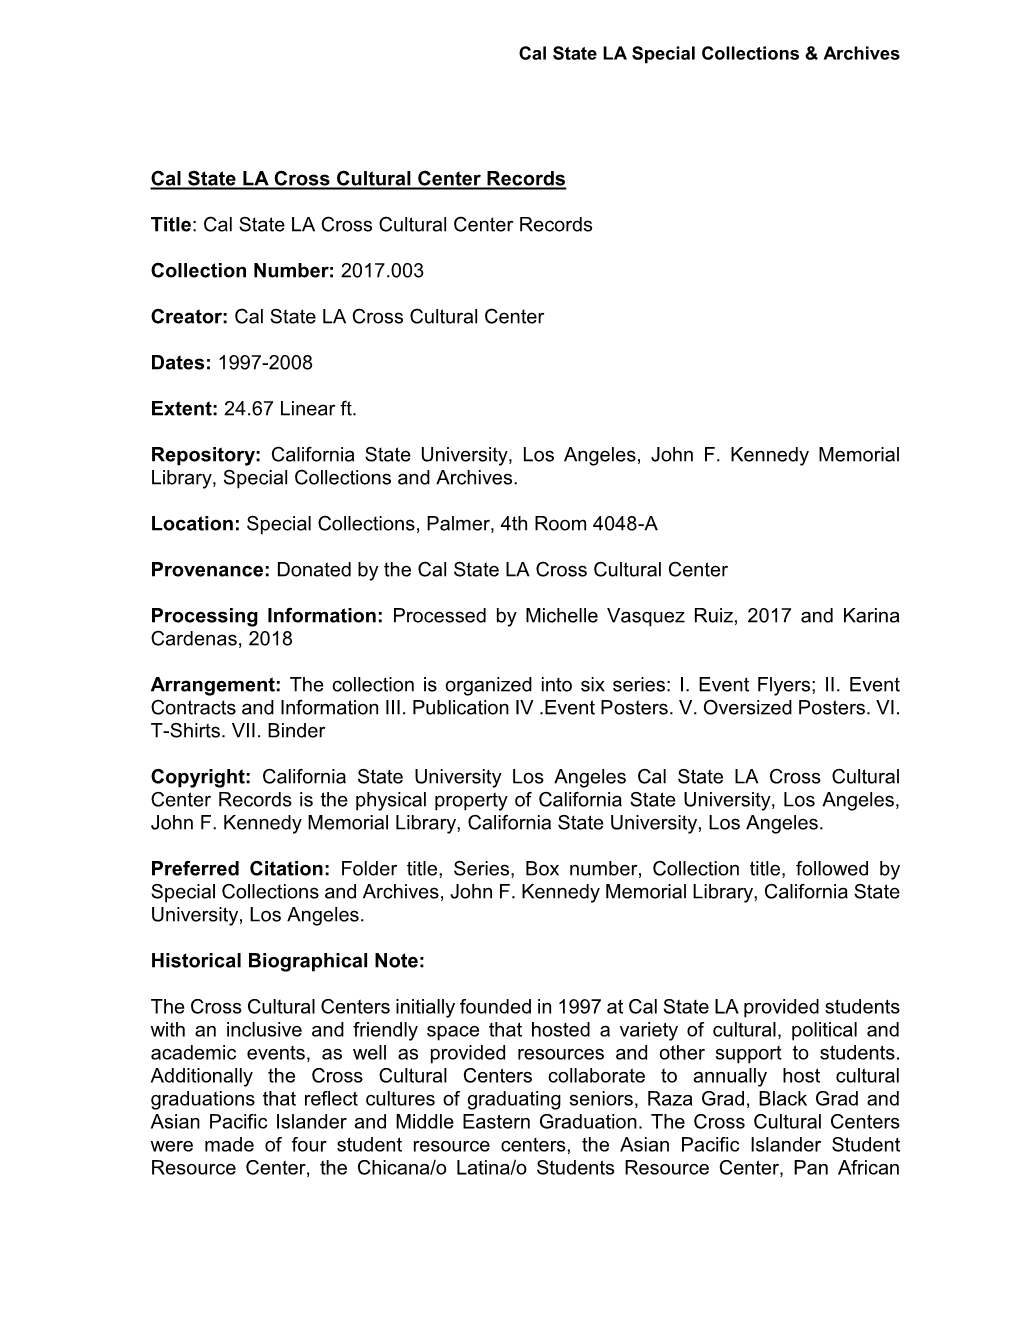 Cal State LA Cross Cultural Center Records Title